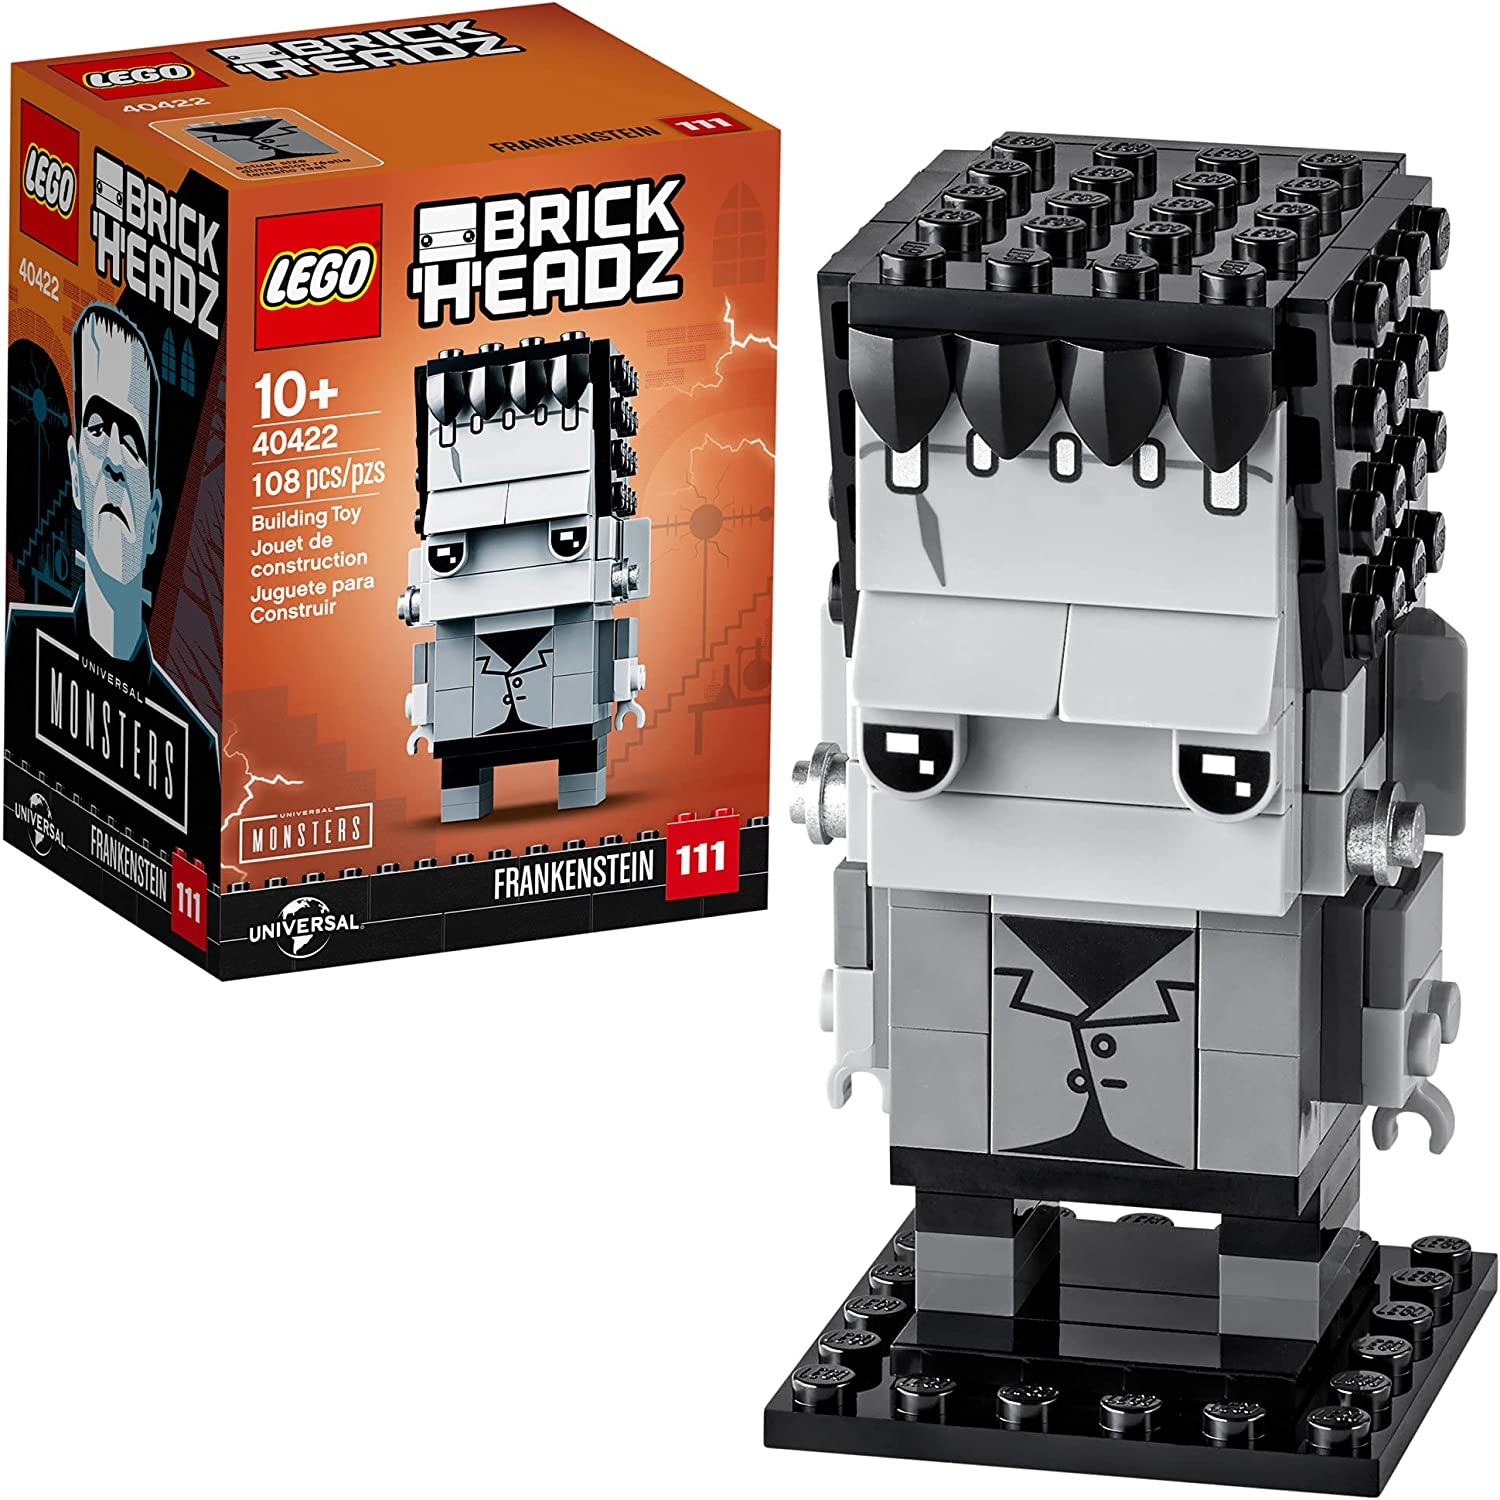 Amazon.com: LEGO BrickHeadz Frankenstein 40422 Building Kit (108 Pieces) : Toys & Games $9